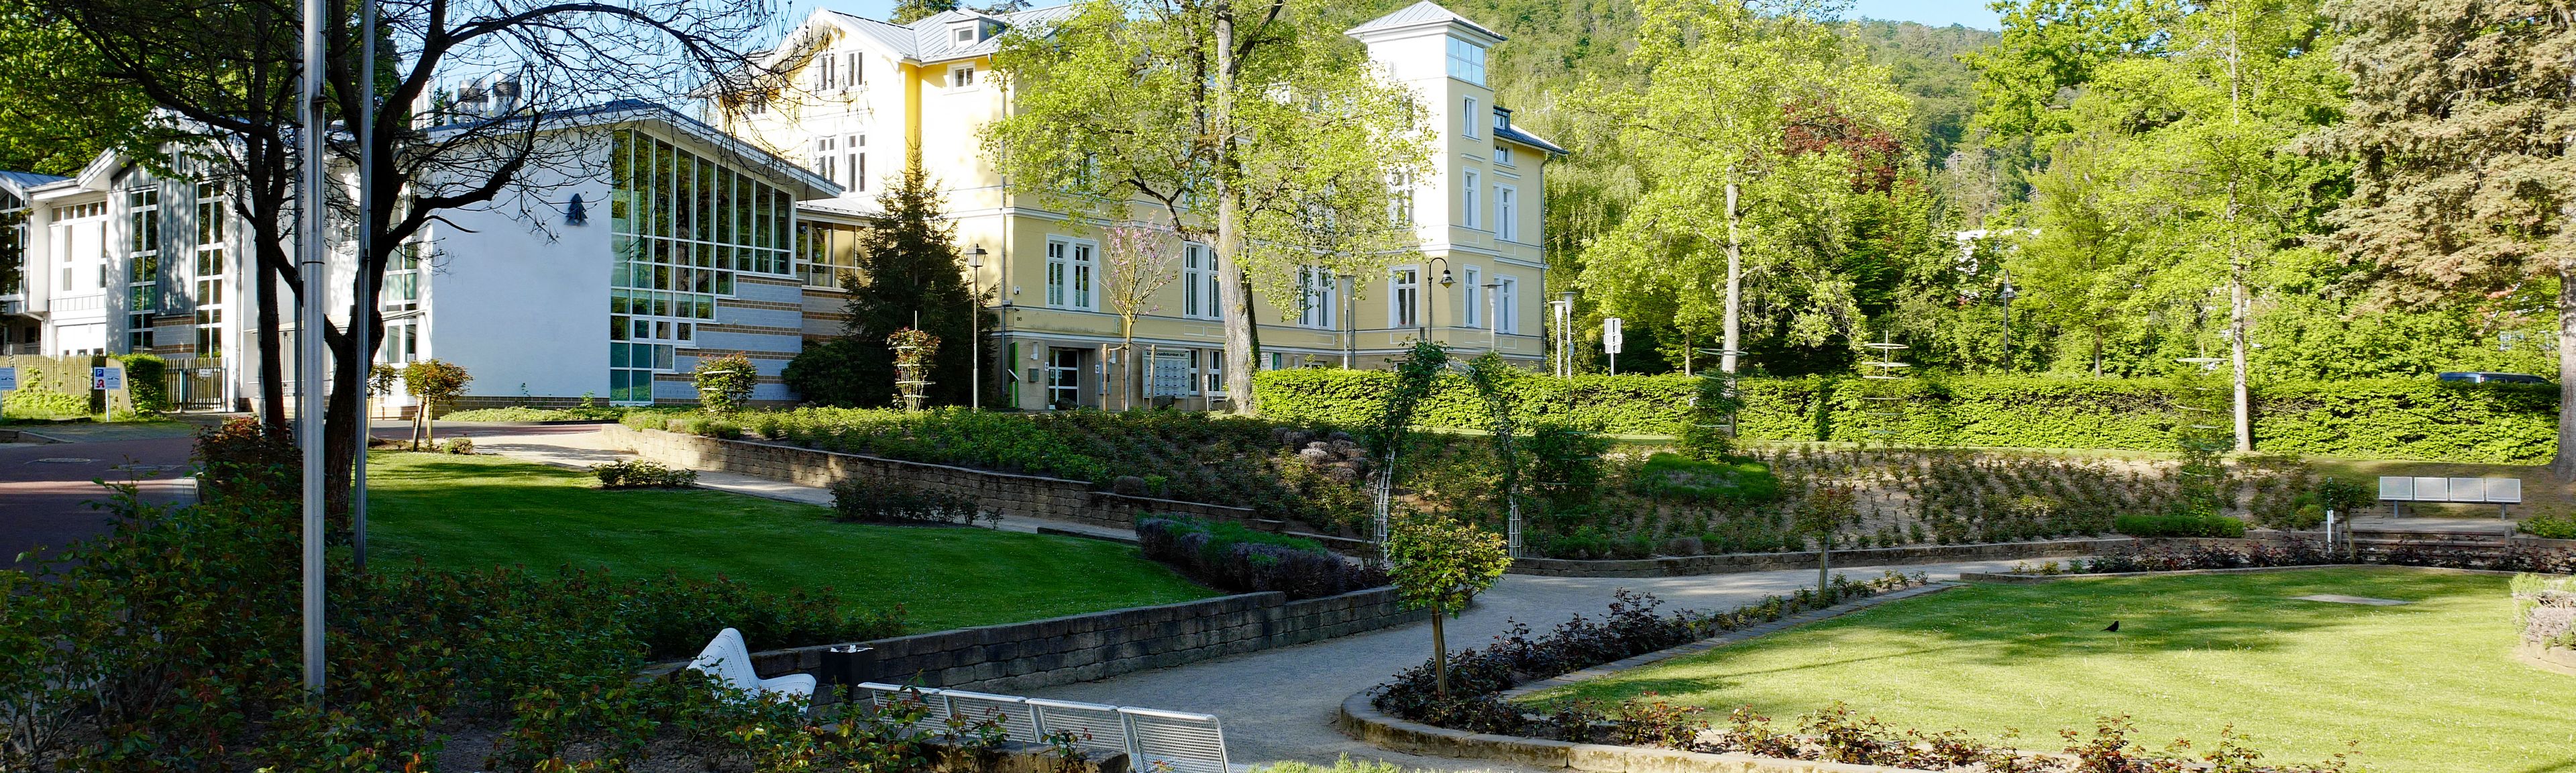 Gesundheitszentrum in Bad Harzburg